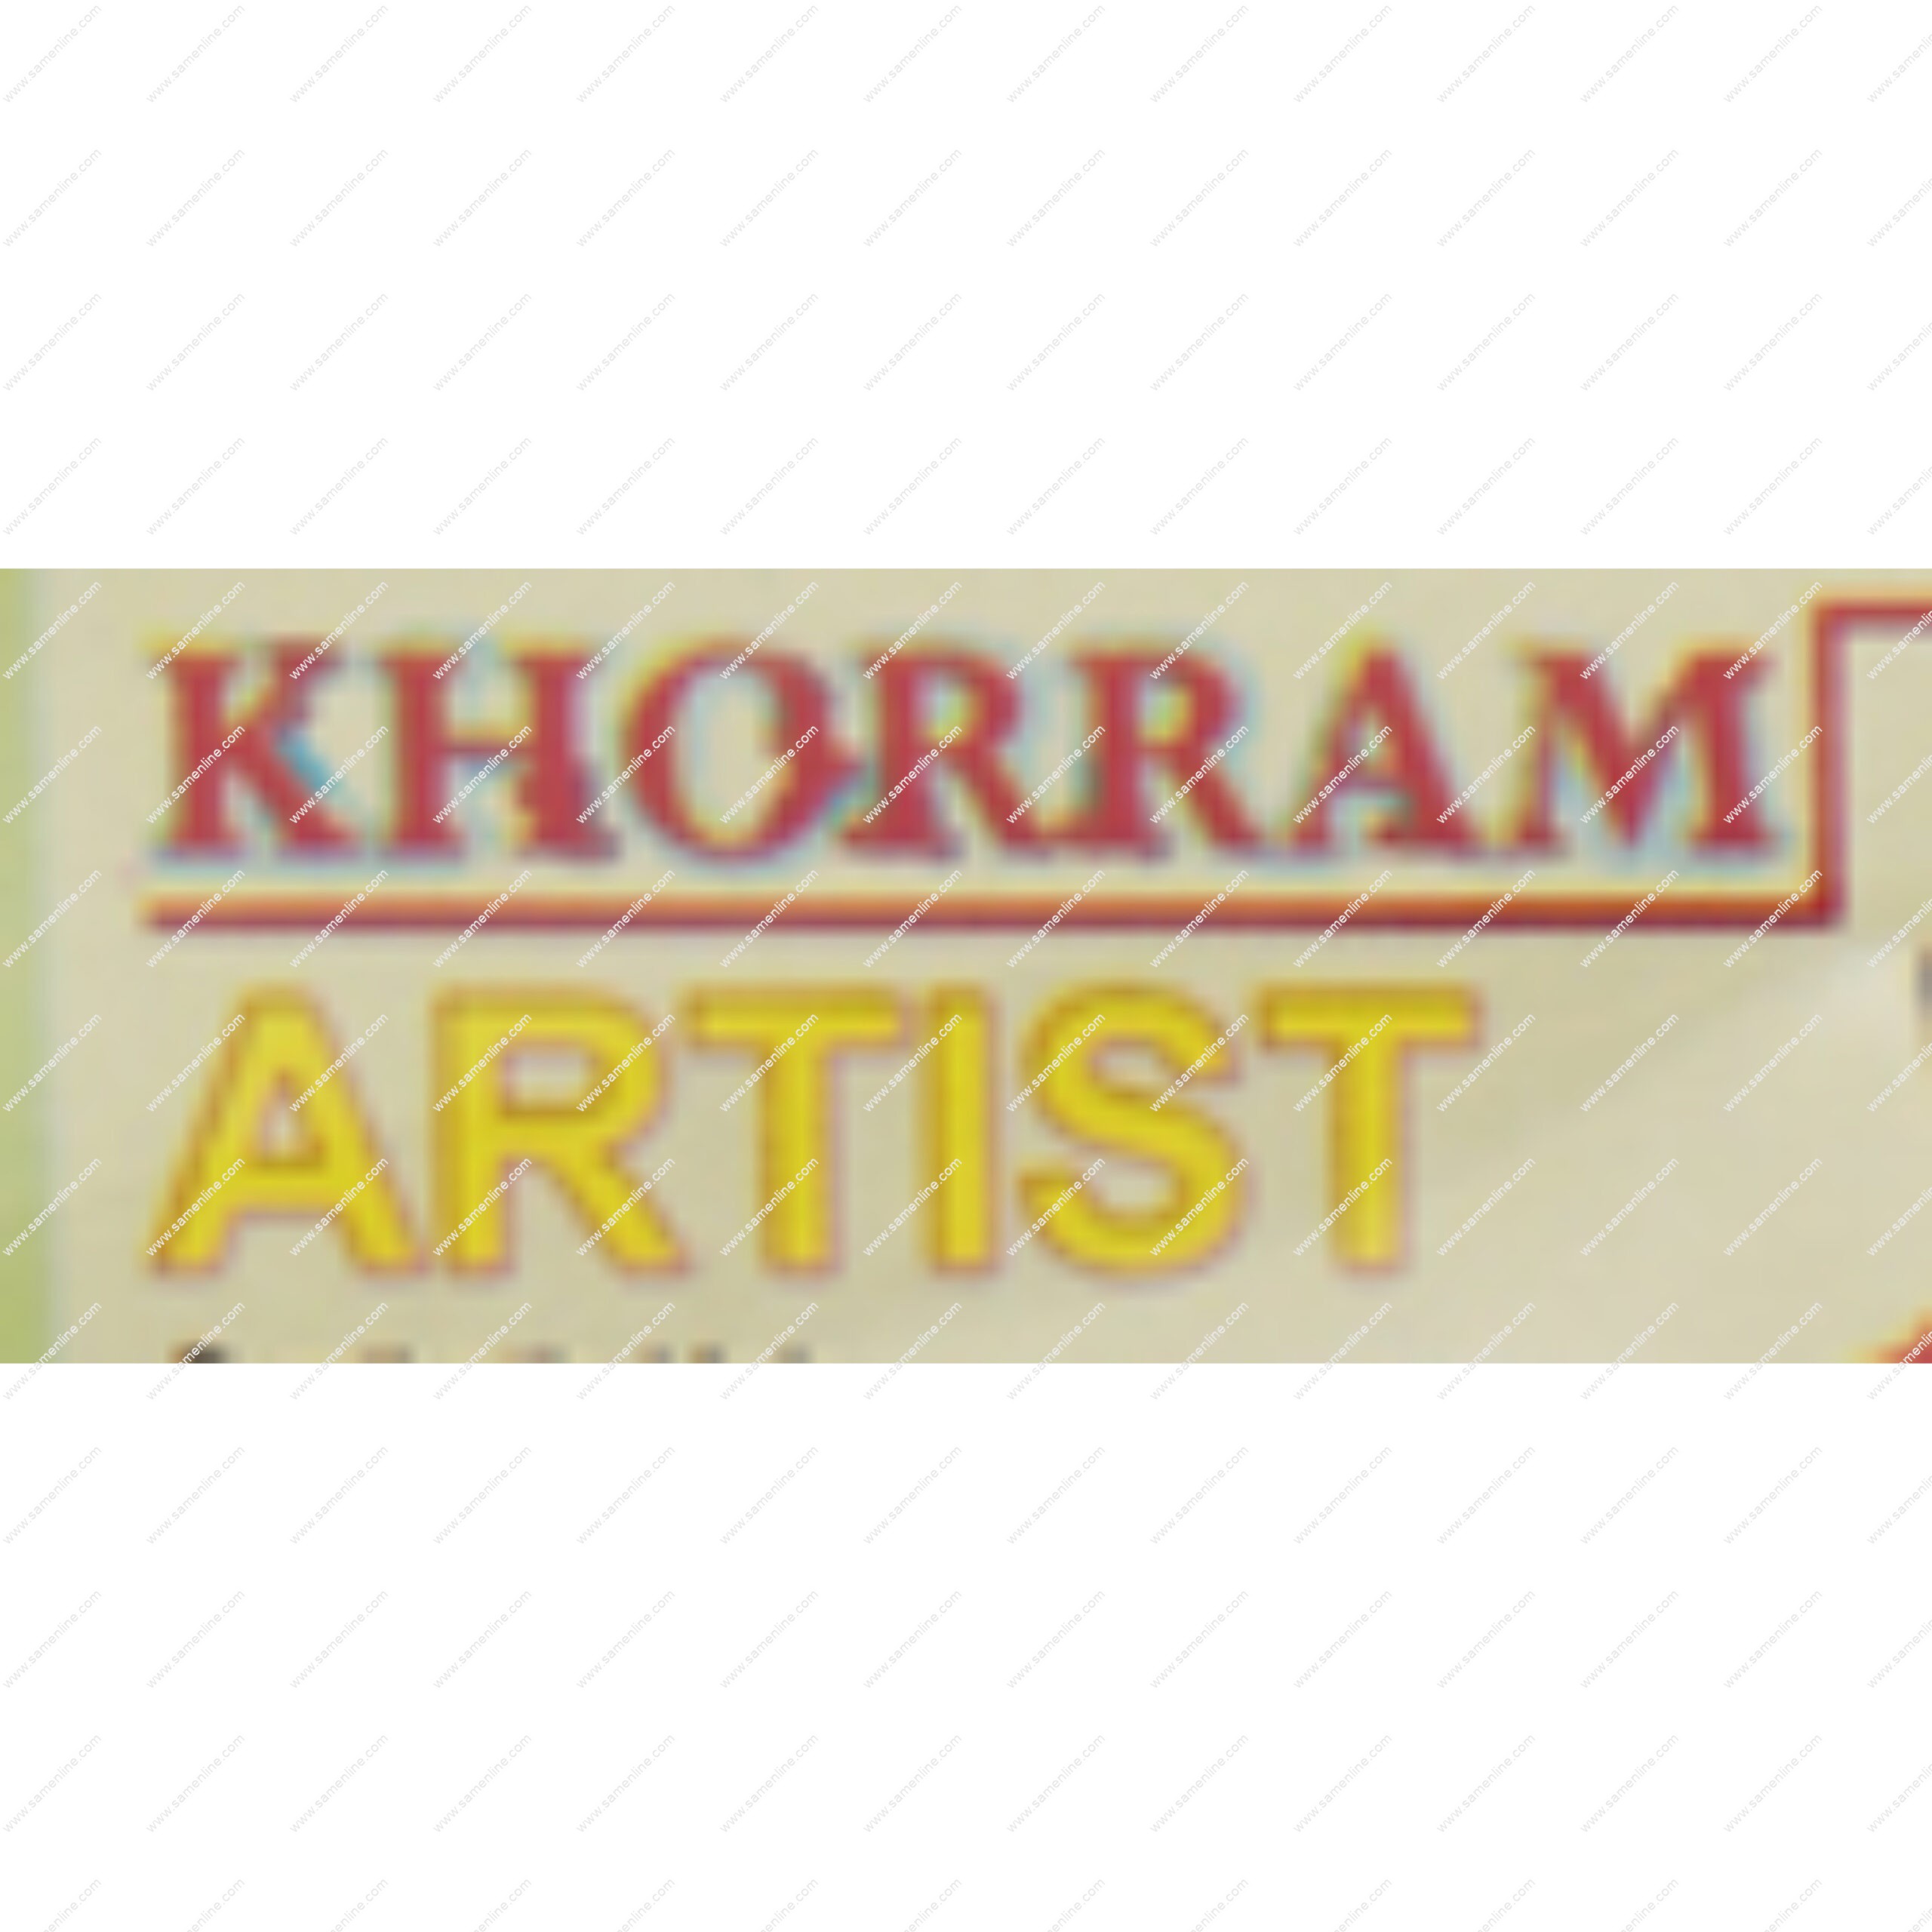 khoram